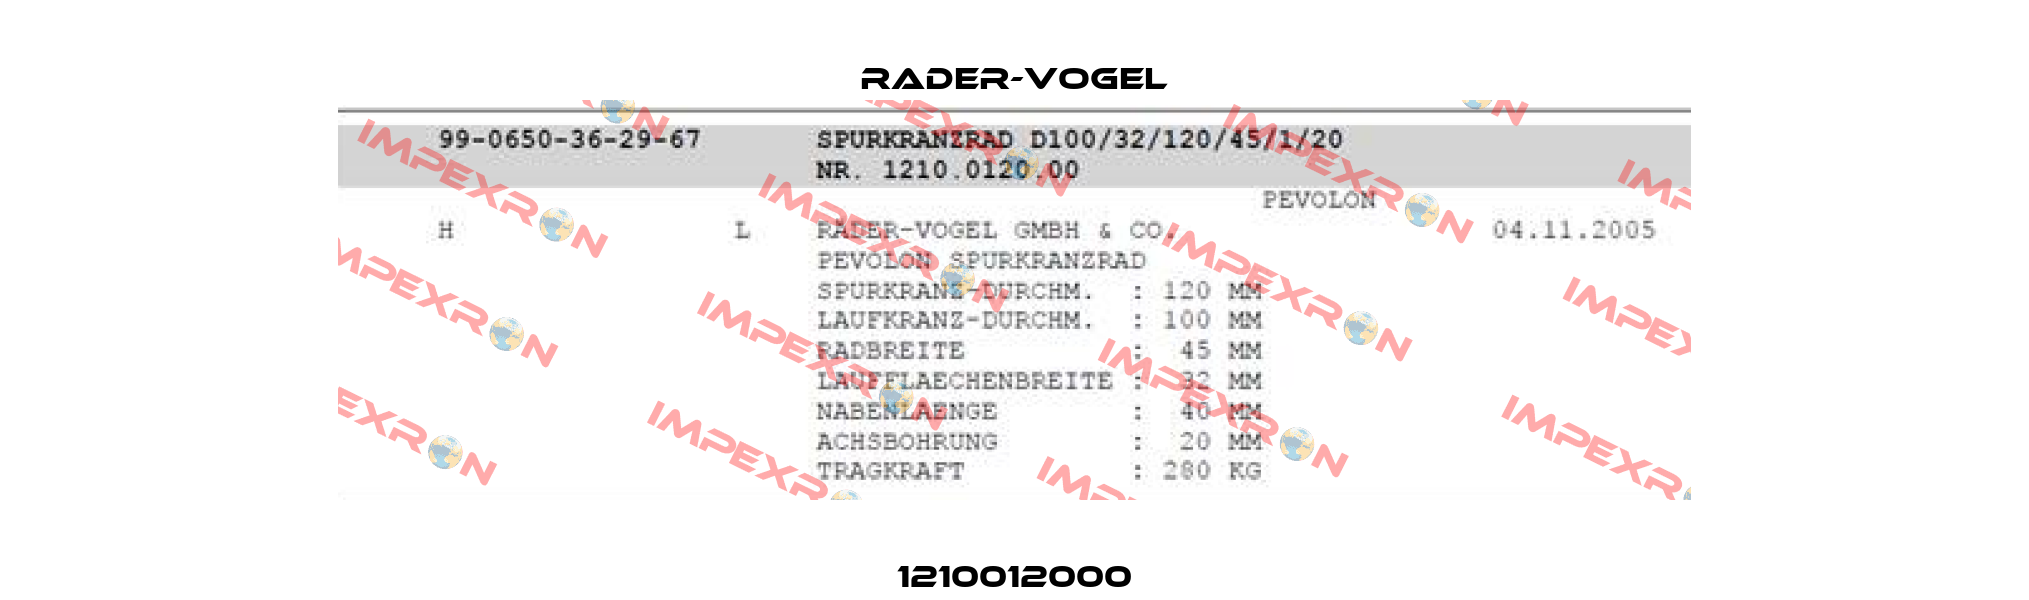 1210012000 Rader-Vogel